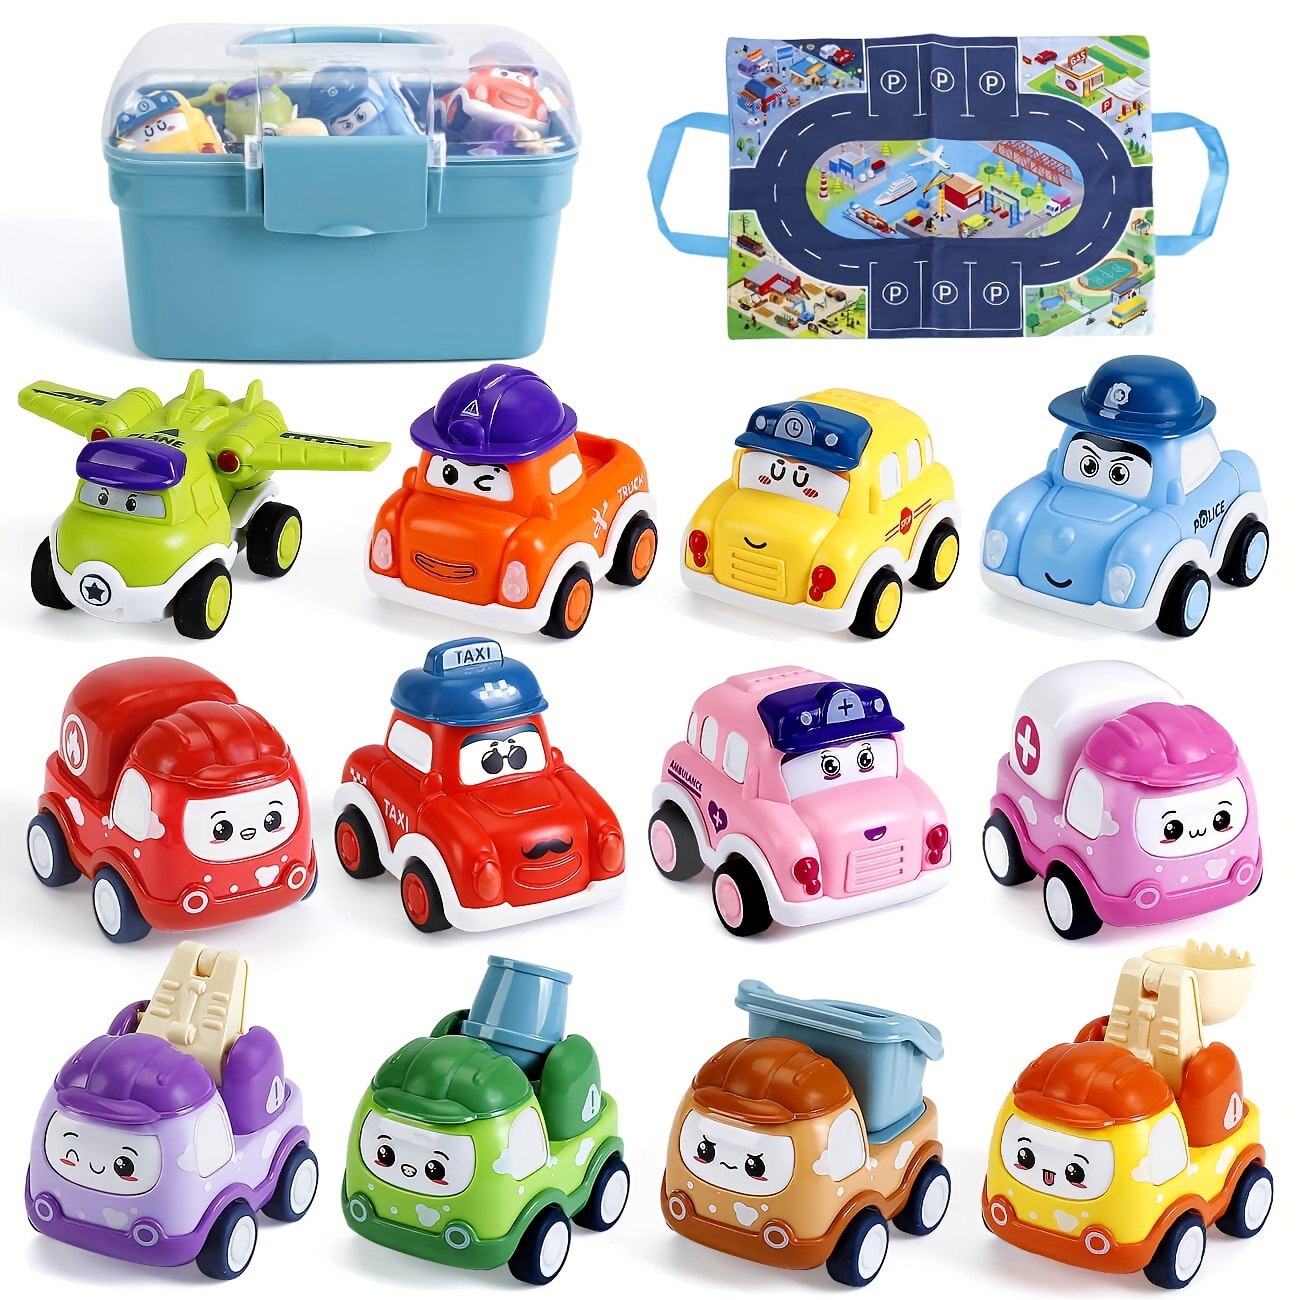  Coches de juguete para bebés, juguetes de coche rosa para  bebés, auto de juguete para niñas pequeñas, regalos del día de San Valentín  para bebés, camiones de empuje y marcha, sonajeros